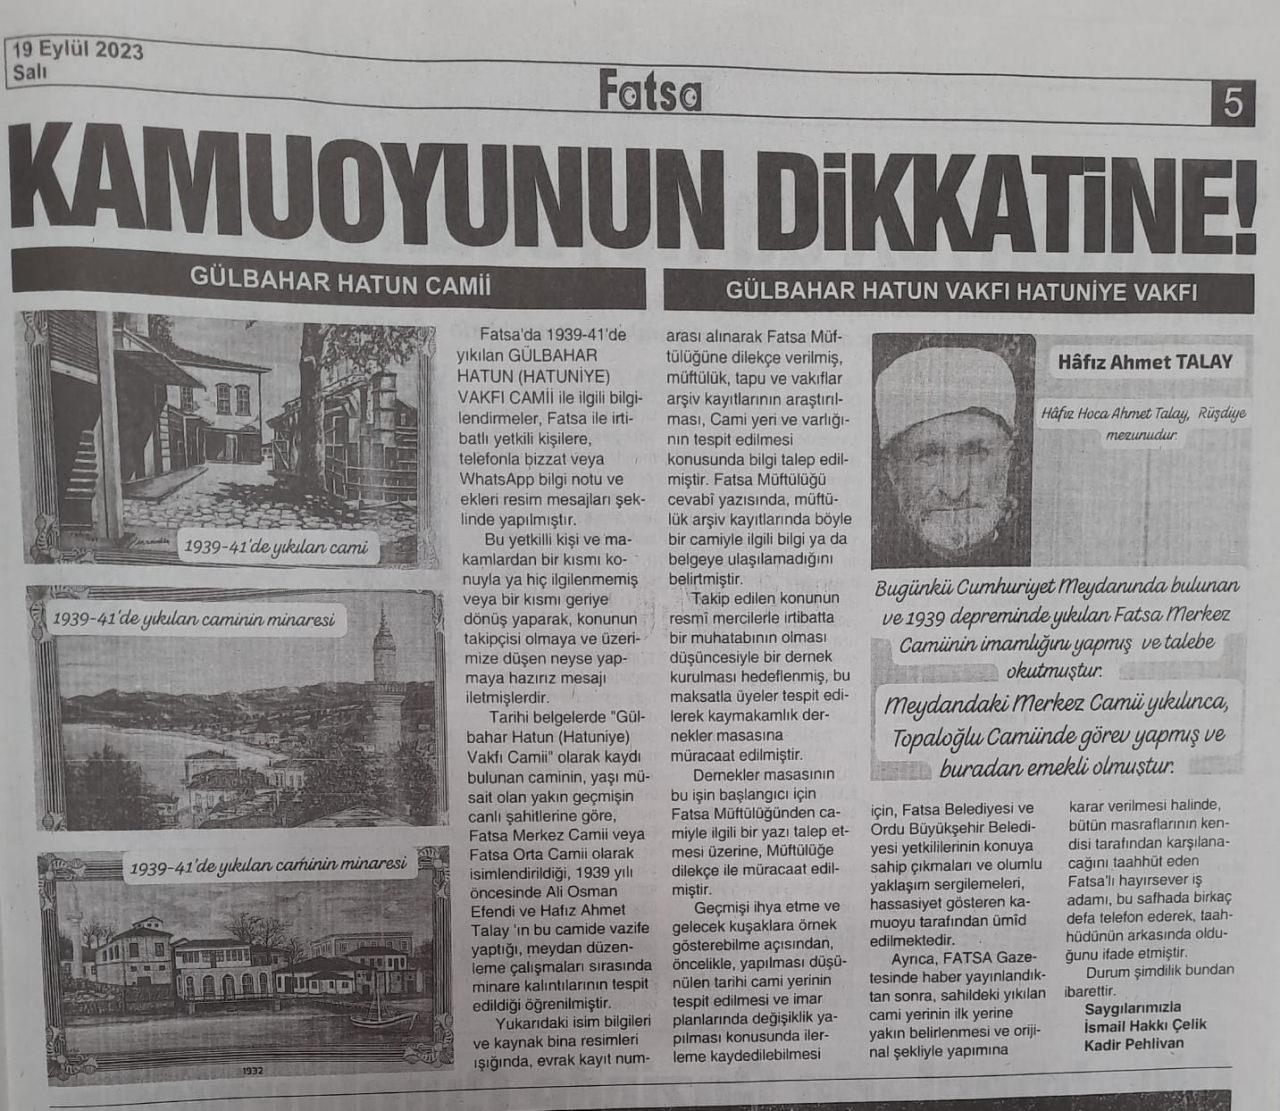 CHP, Yavuz Sultan Selim'in annesinin vakfettiği camiyi de yok etmiş! Fatsalılardan çağrı